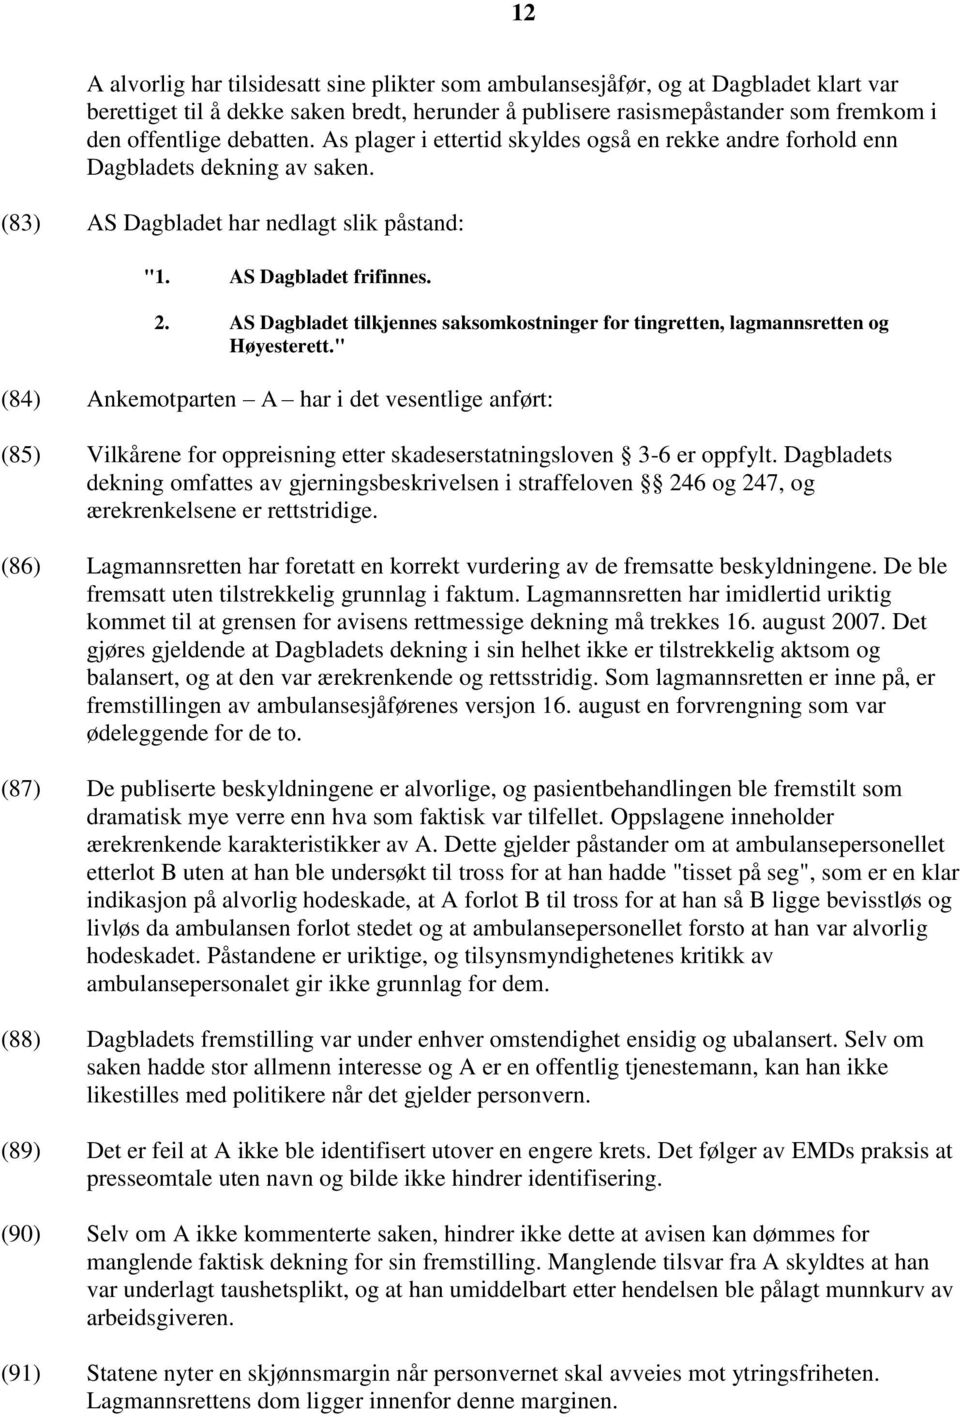 AS Dagbladet tilkjennes saksomkostninger for tingretten, lagmannsretten og Høyesterett.